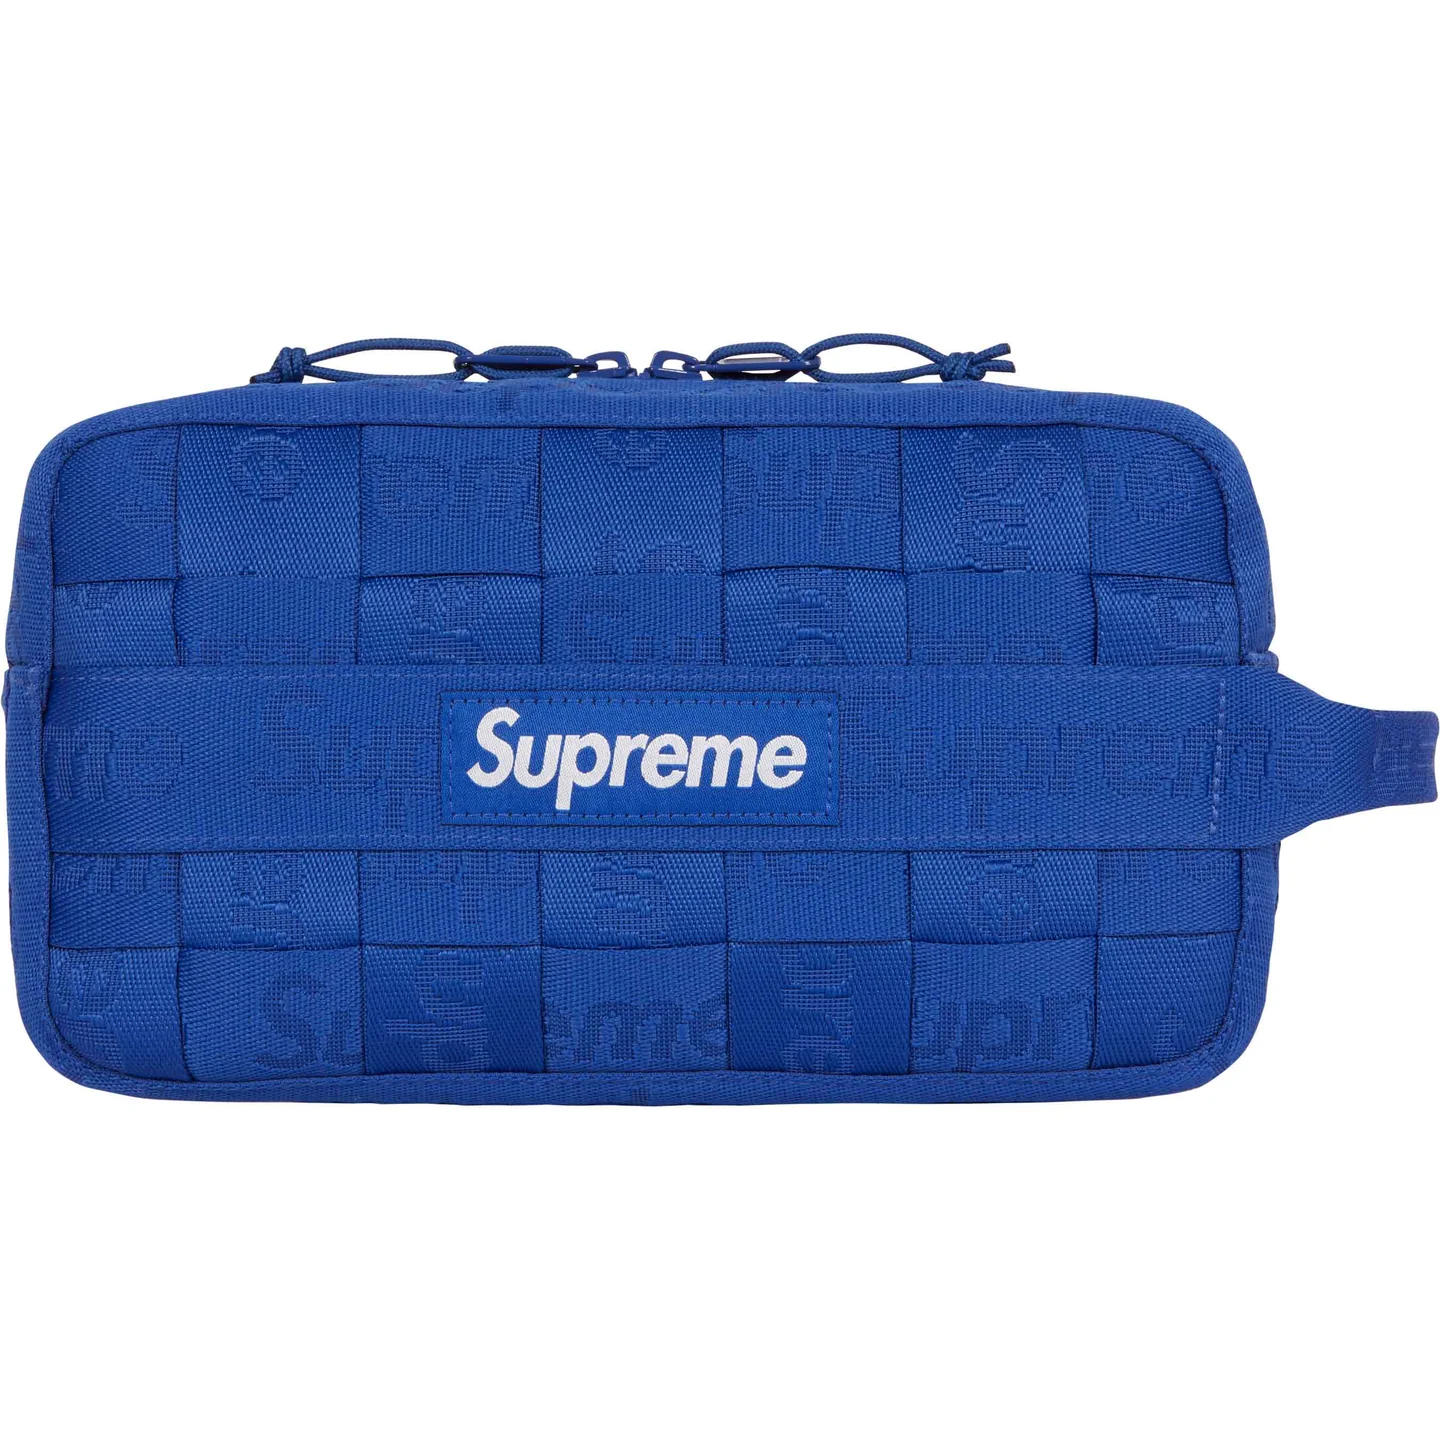 Supreme Woven Utility Bag